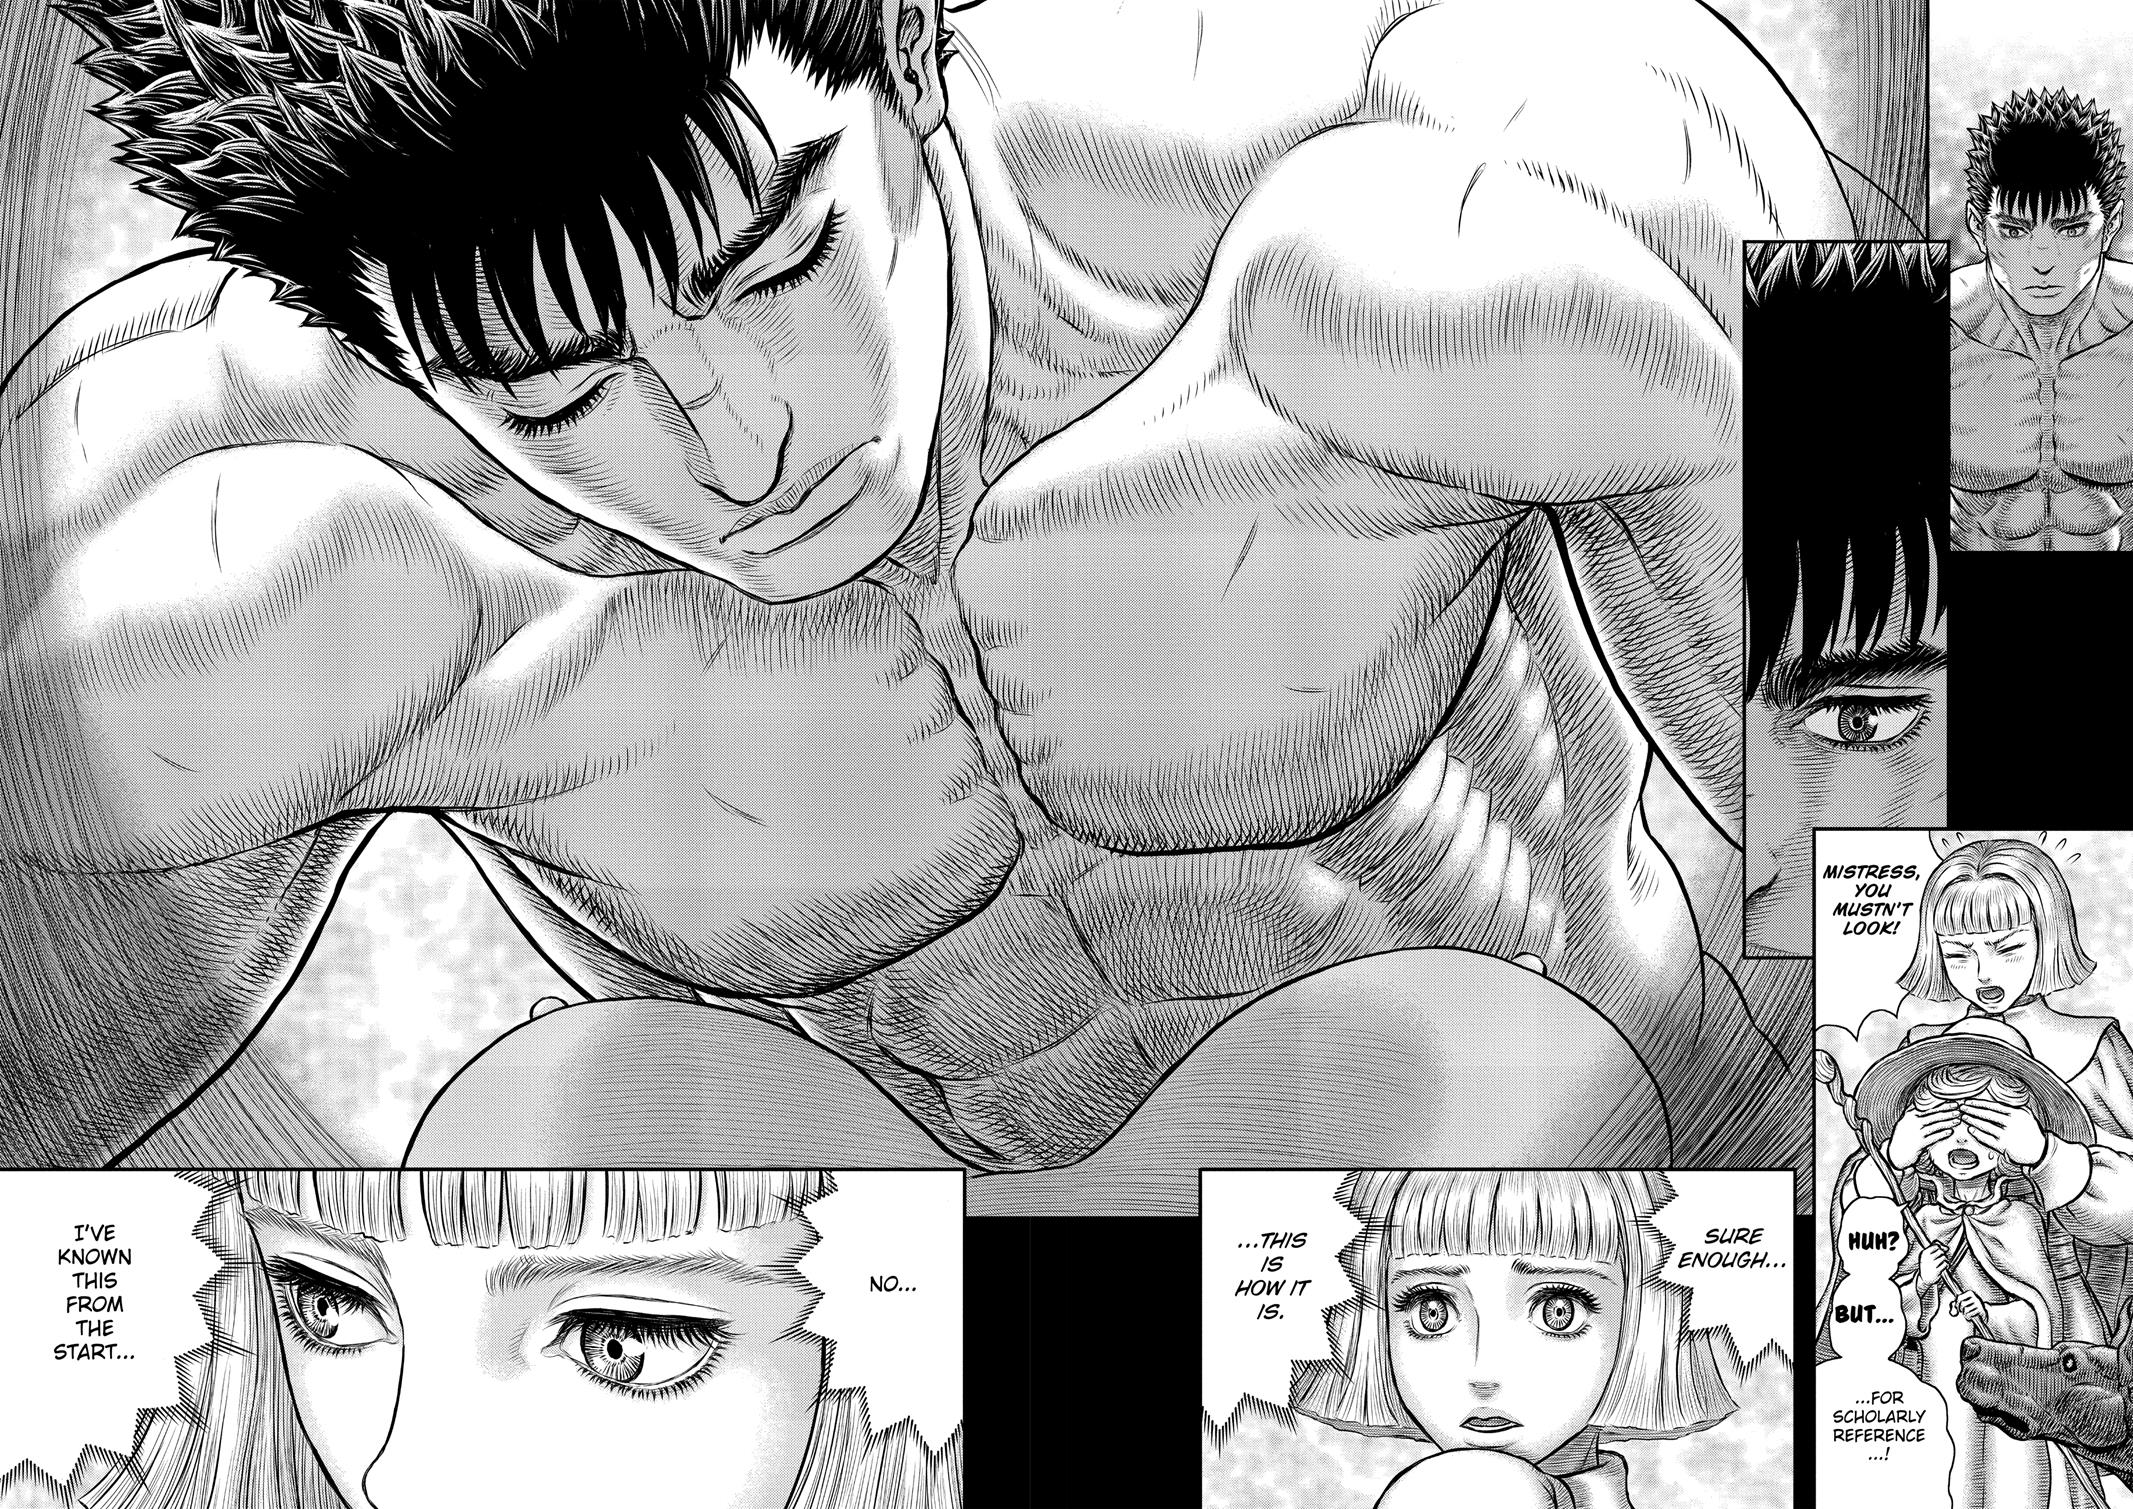 Berserk Manga Chapter 350 image 13